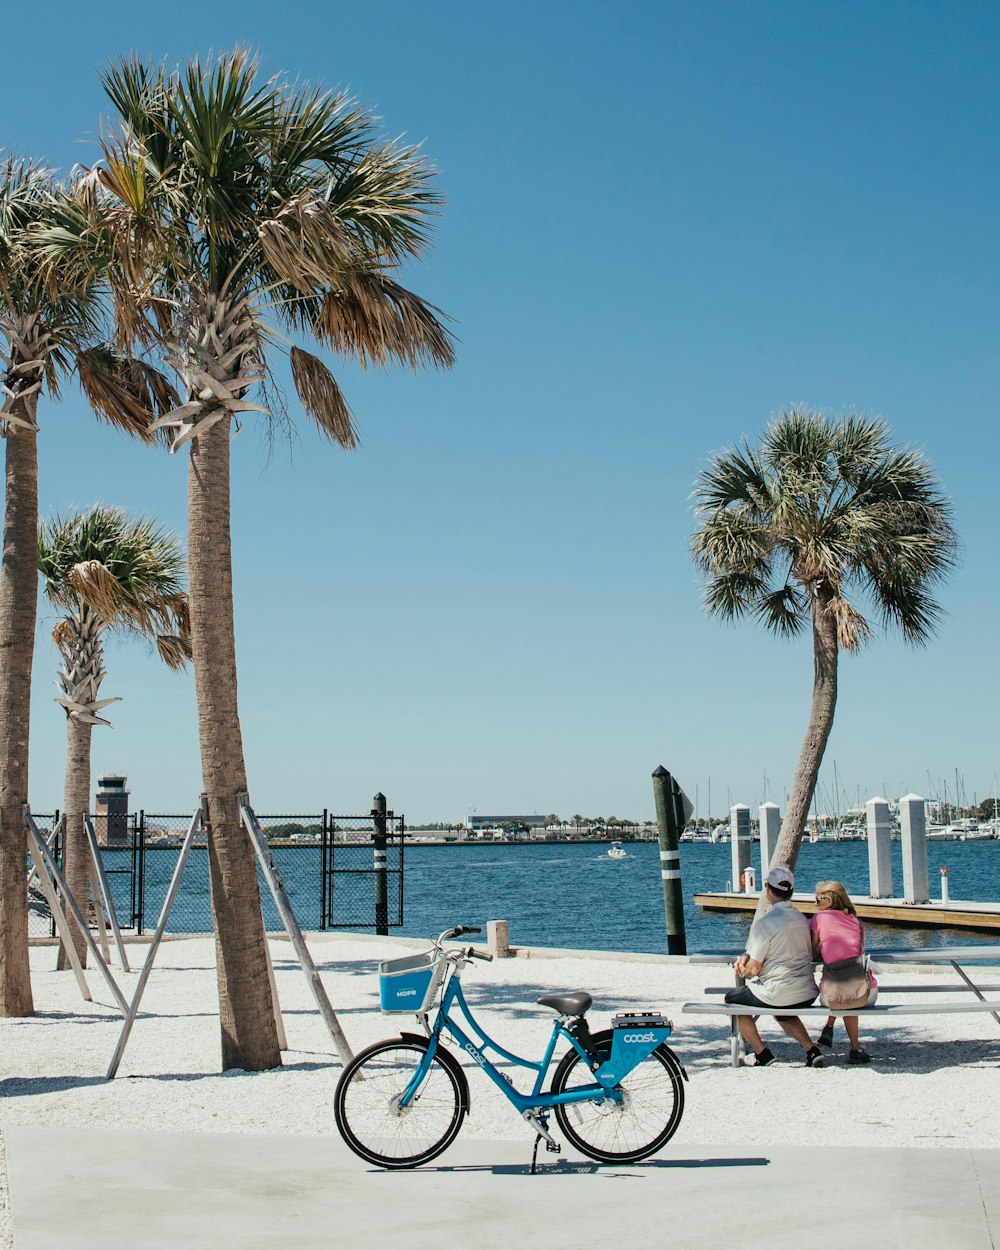 Imágenes de Bahía De Tampa | Descarga imágenes gratuitas en Unsplash